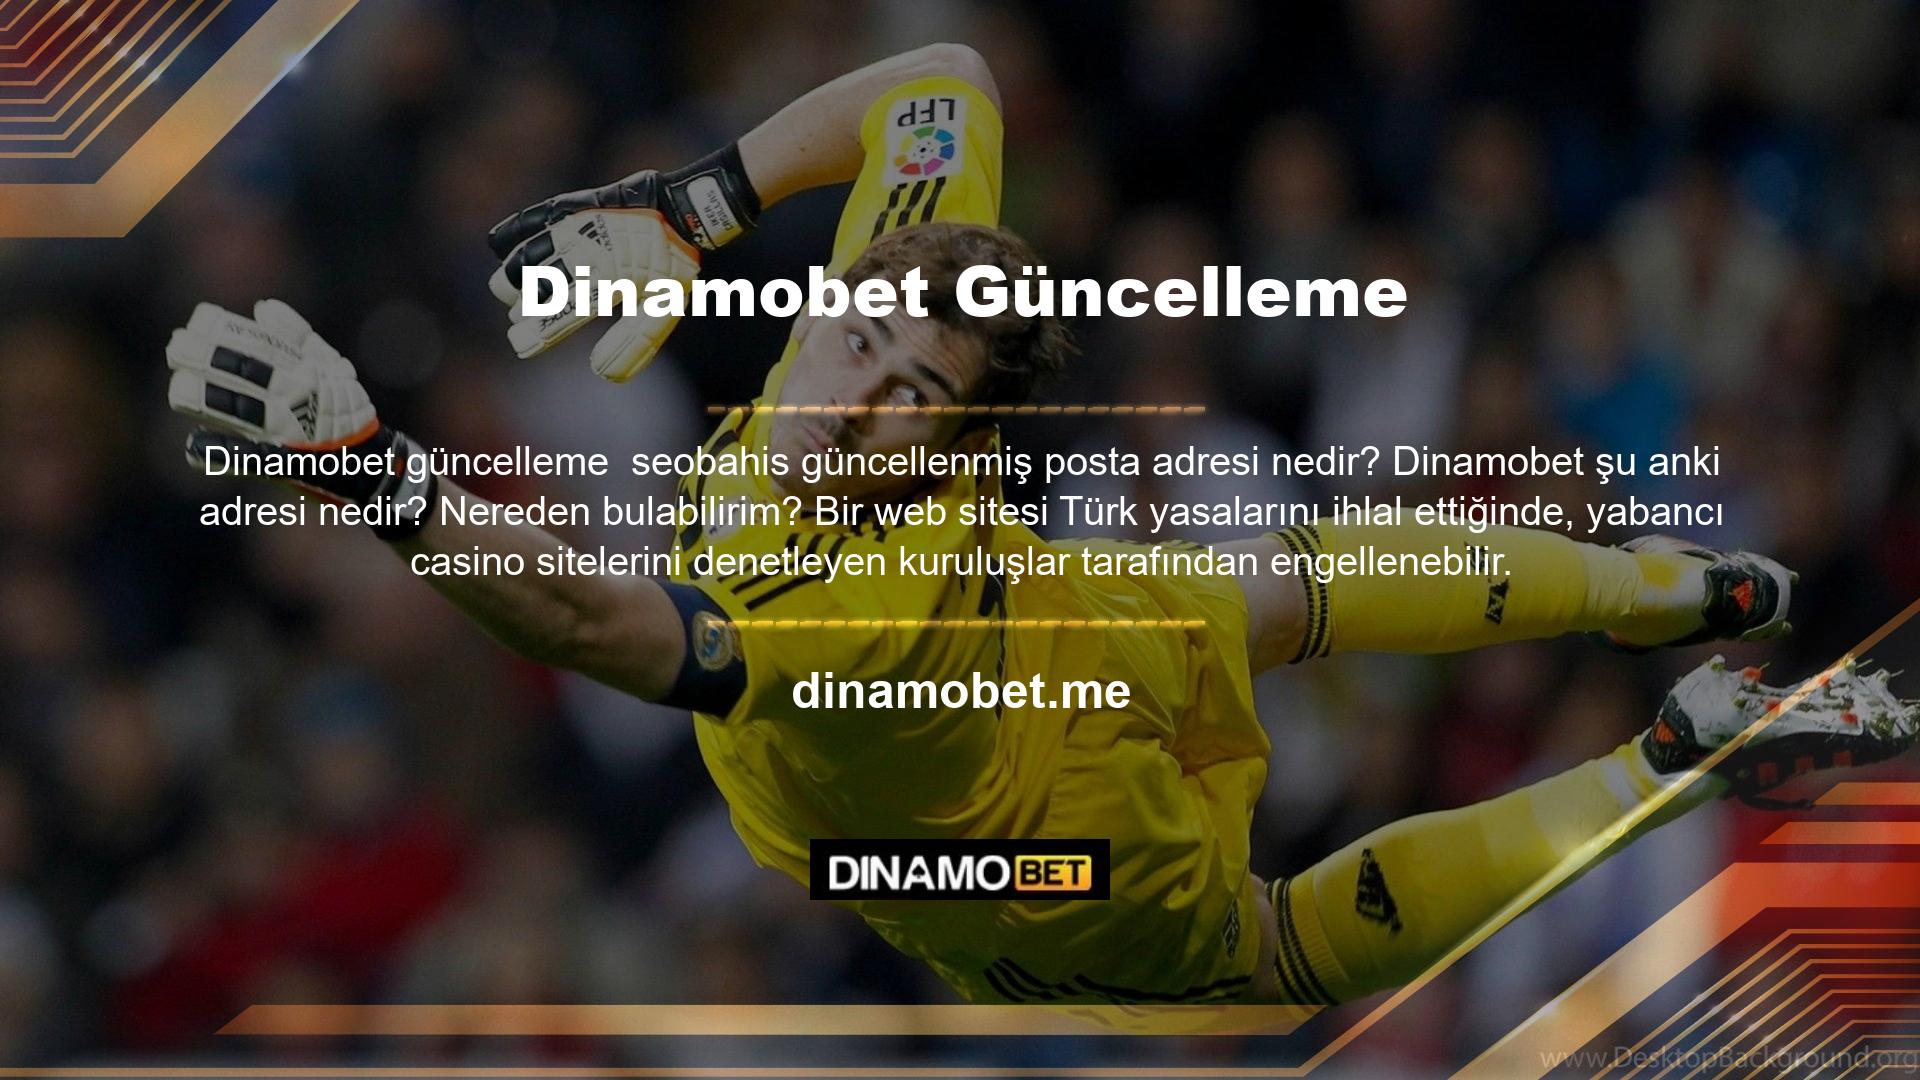 Bu önlemlere rağmen Dinamobet internet sitesi kullanıcılara yeni bir adres vermeyi başardı